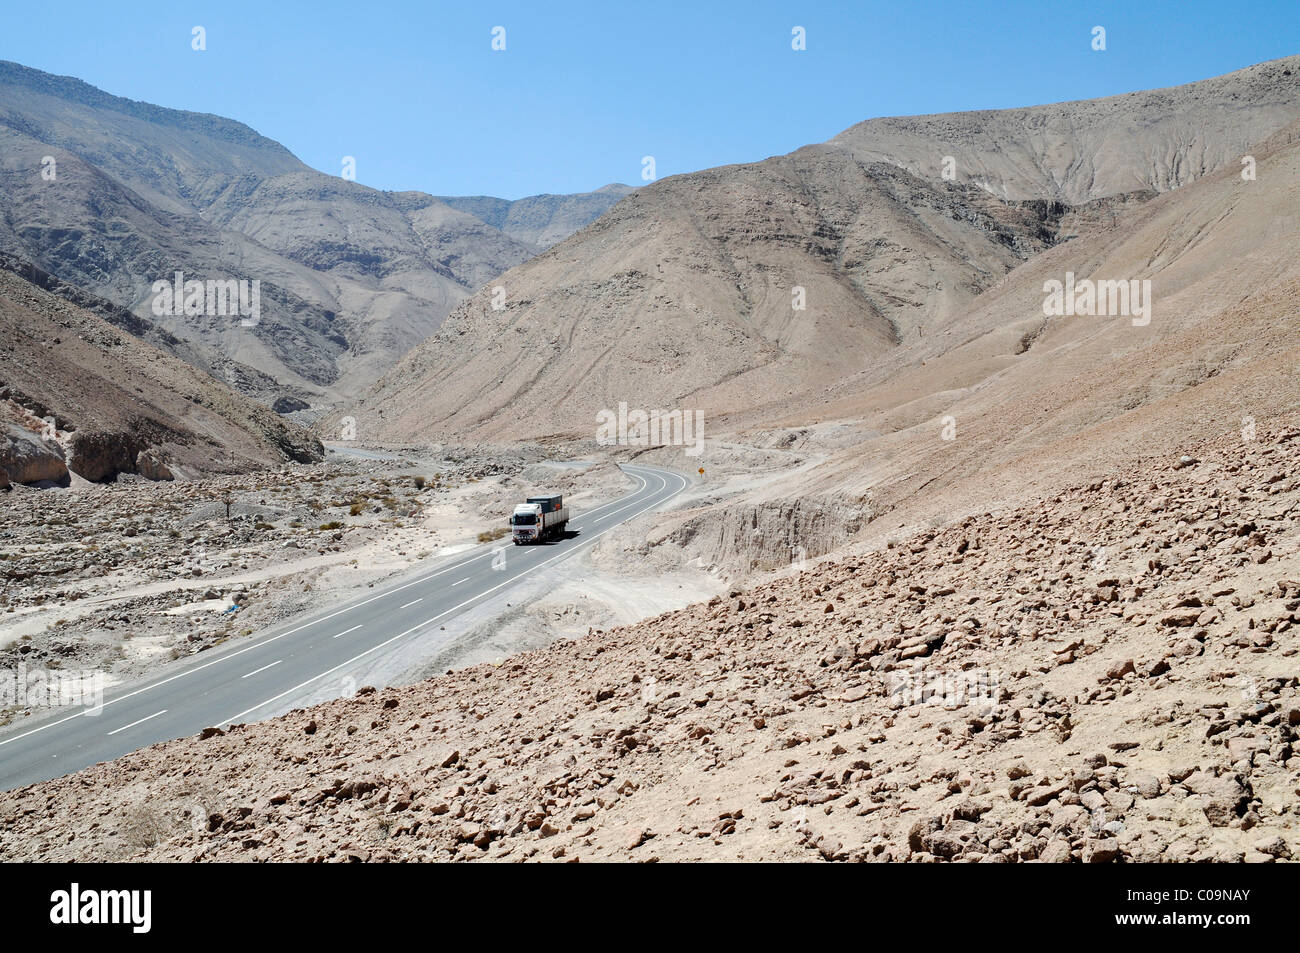 Camion, route déserte, désert d'Atacama, désert, montagnes, Arica, Norte Grande, le nord du Chili, Chili, Amérique du Sud Banque D'Images